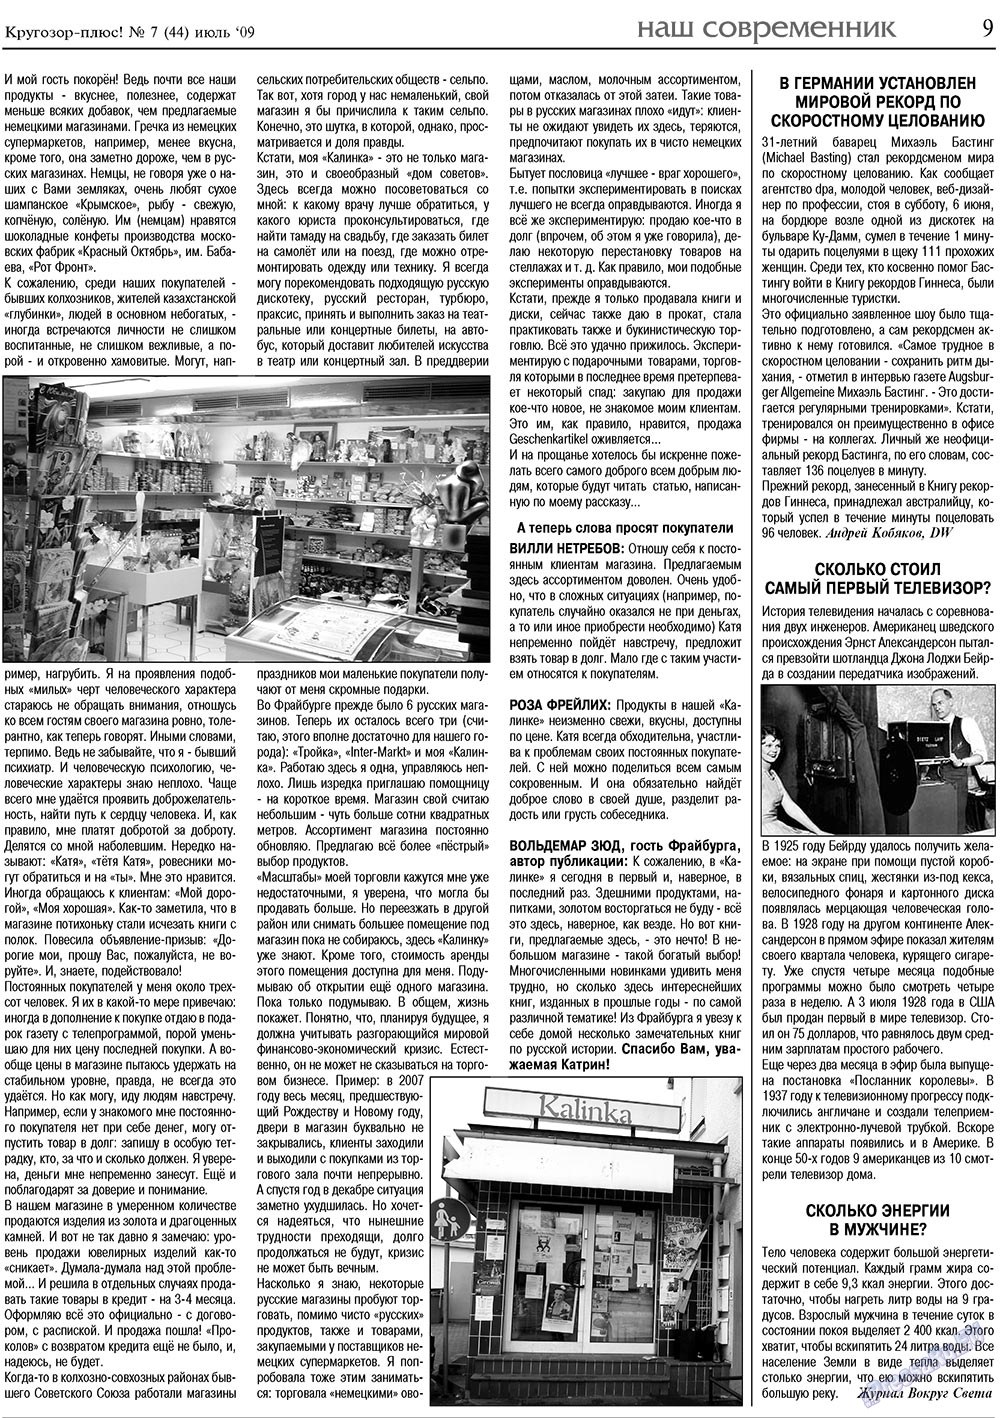 Кругозор плюс!, газета. 2009 №7 стр.9